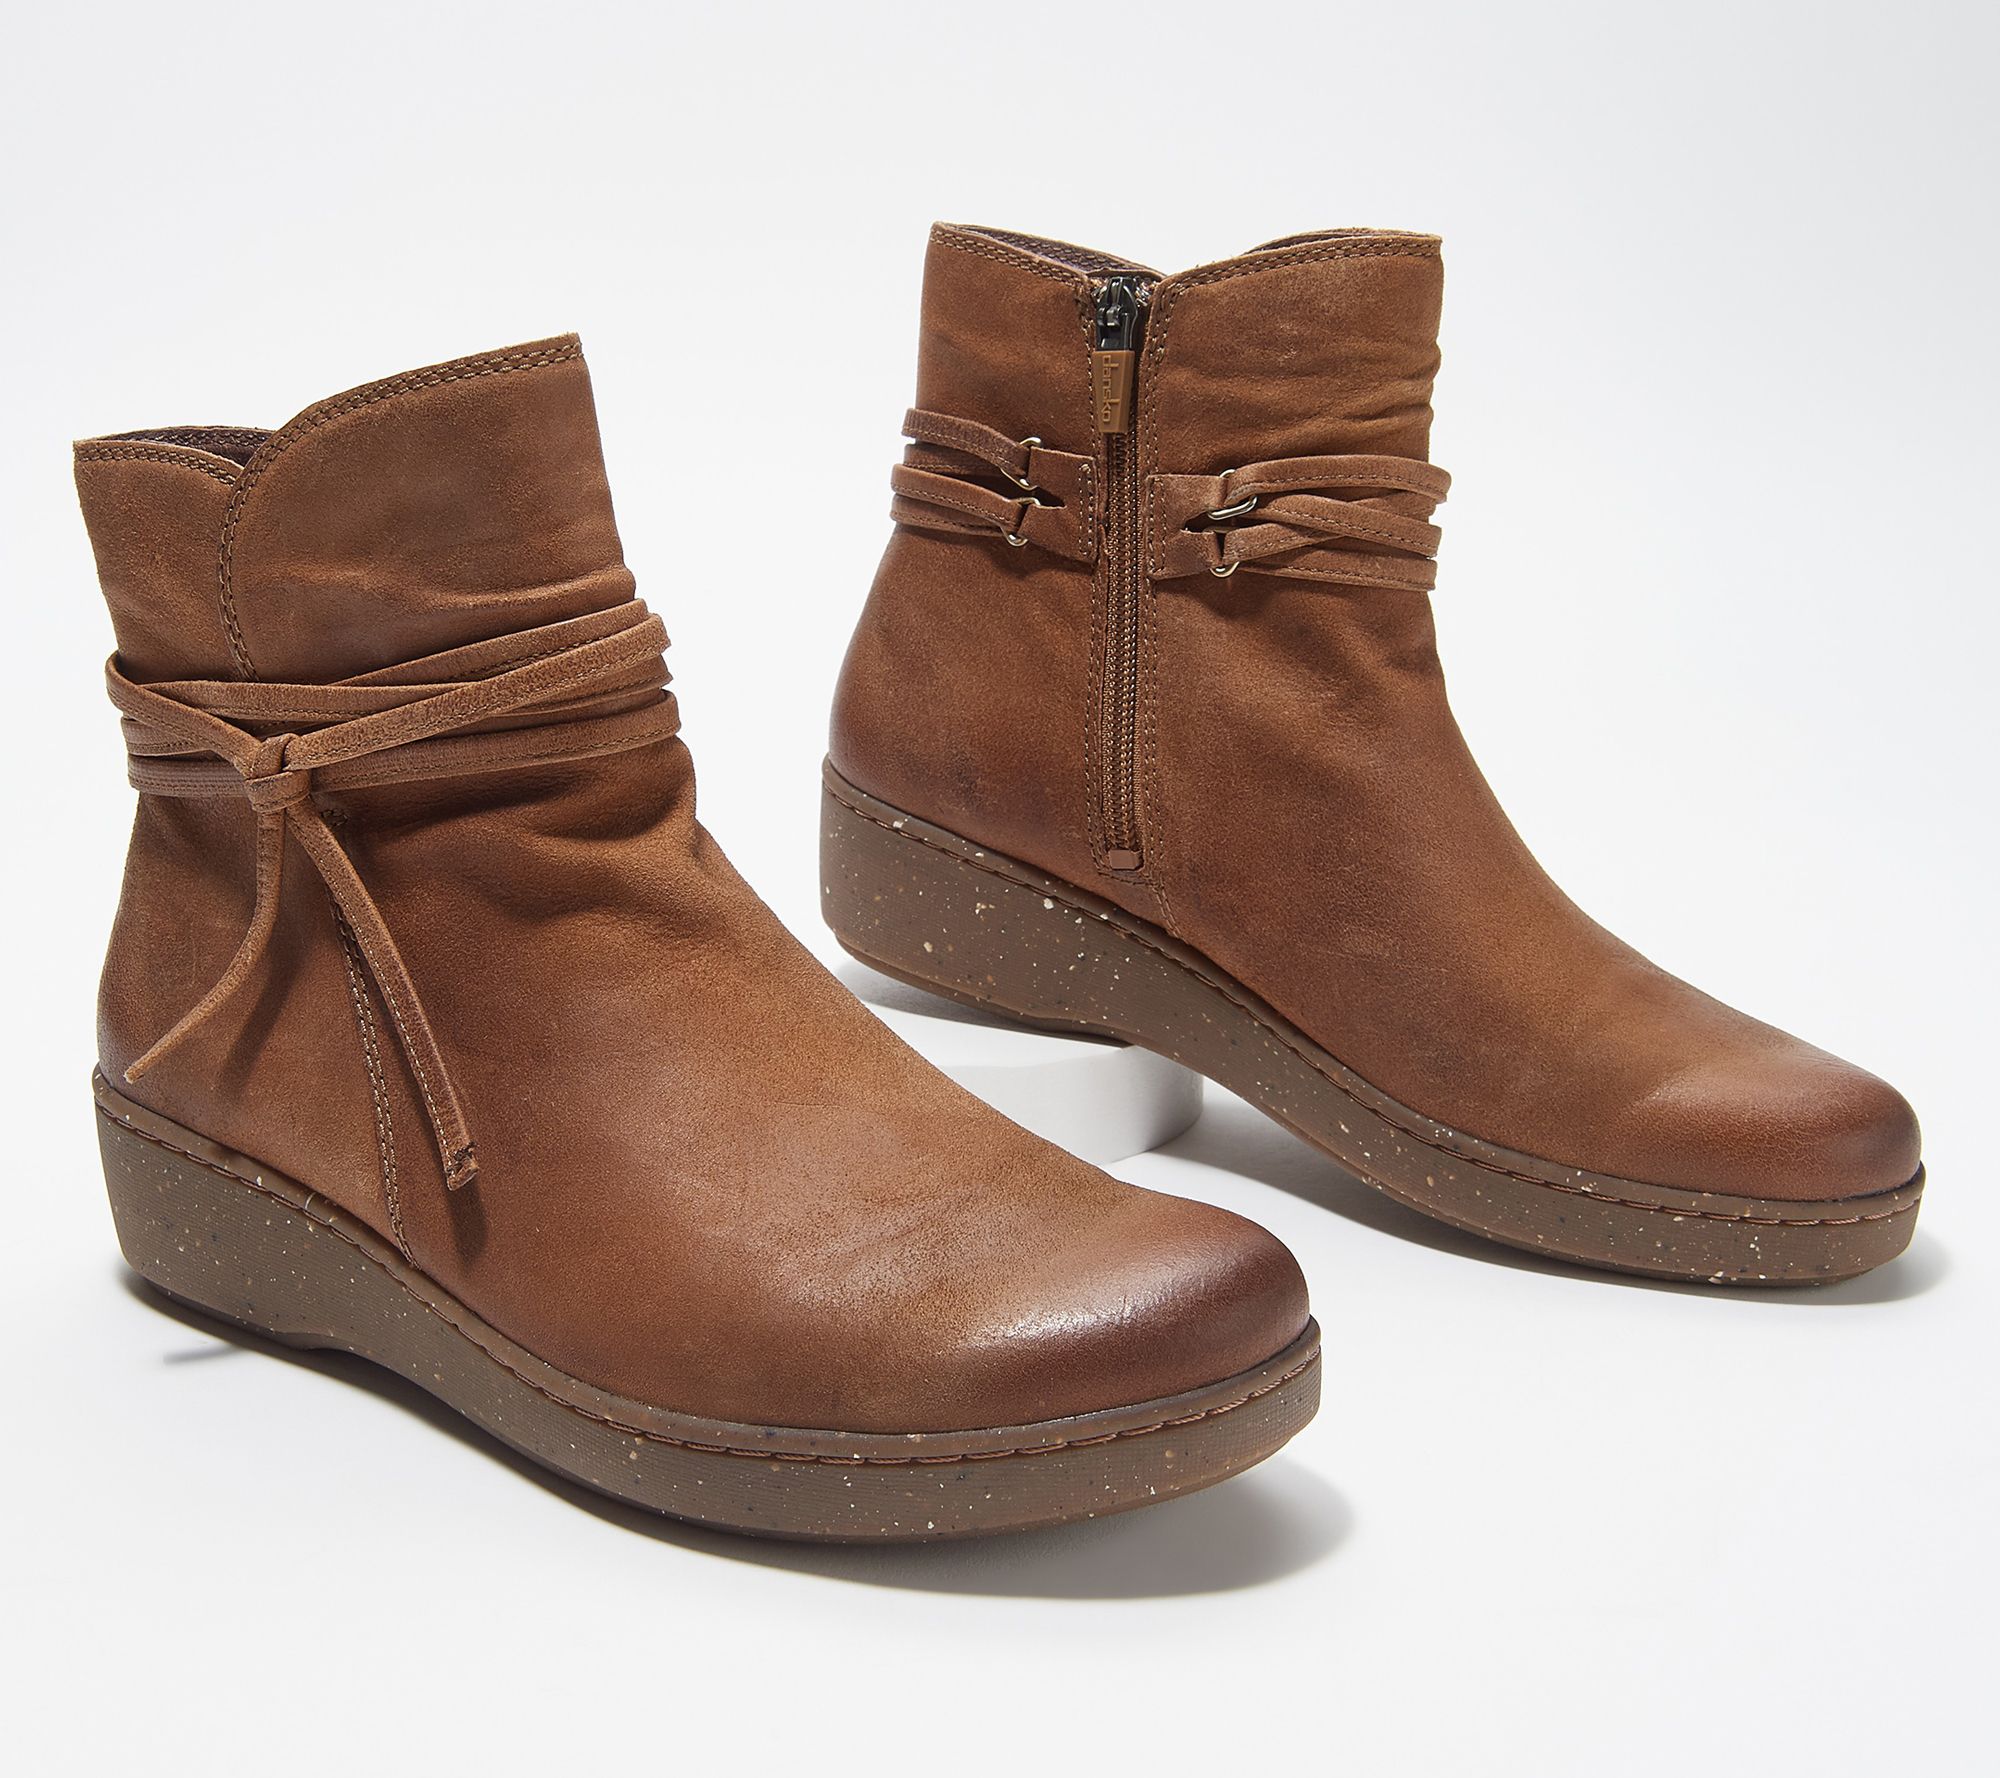 dansko fur lined boots